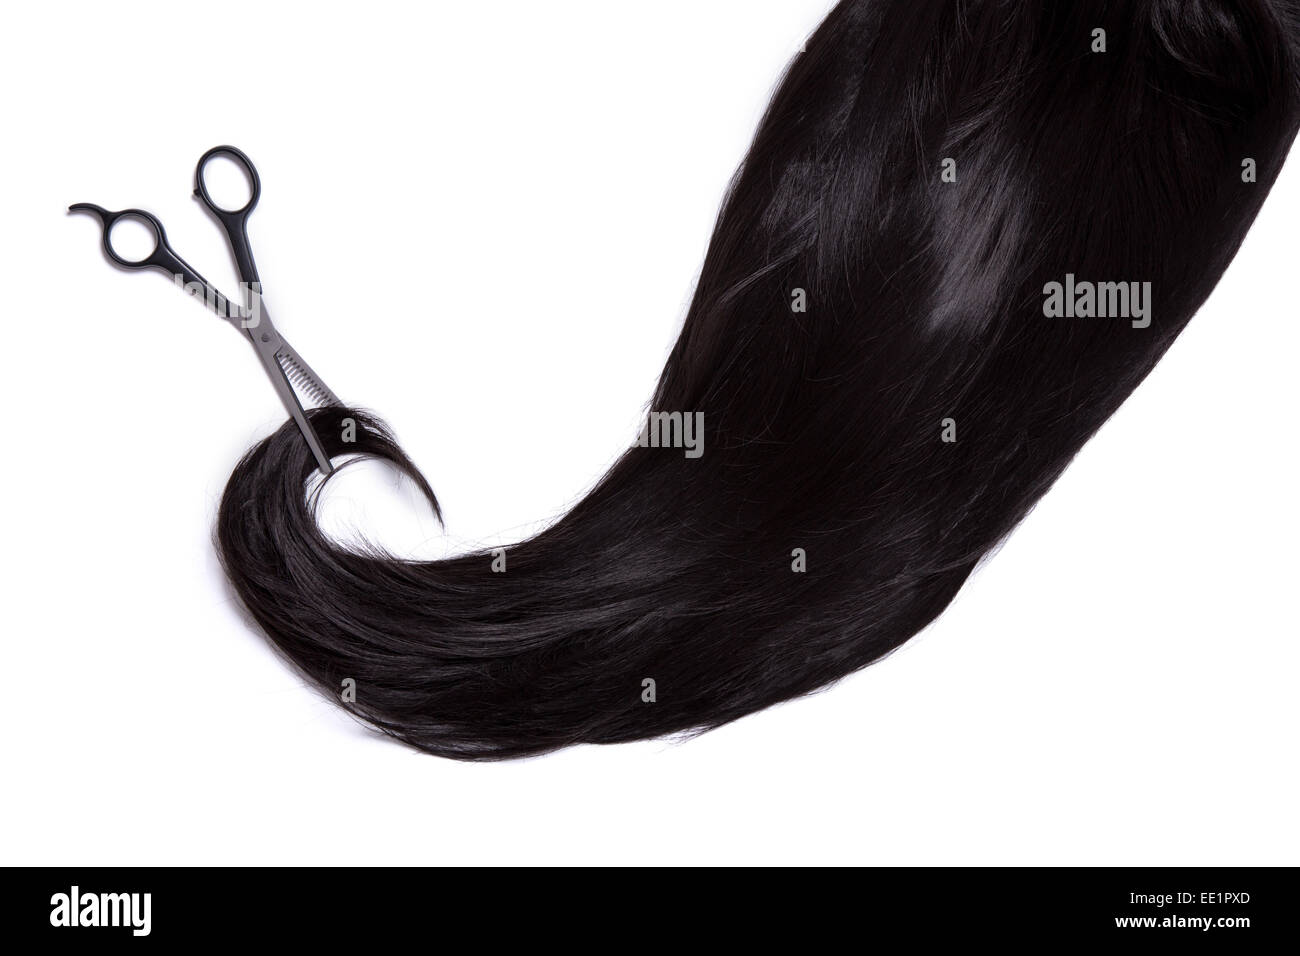 De longs cheveux noirs avec des ciseaux professionnels, isolé sur fond blanc Banque D'Images